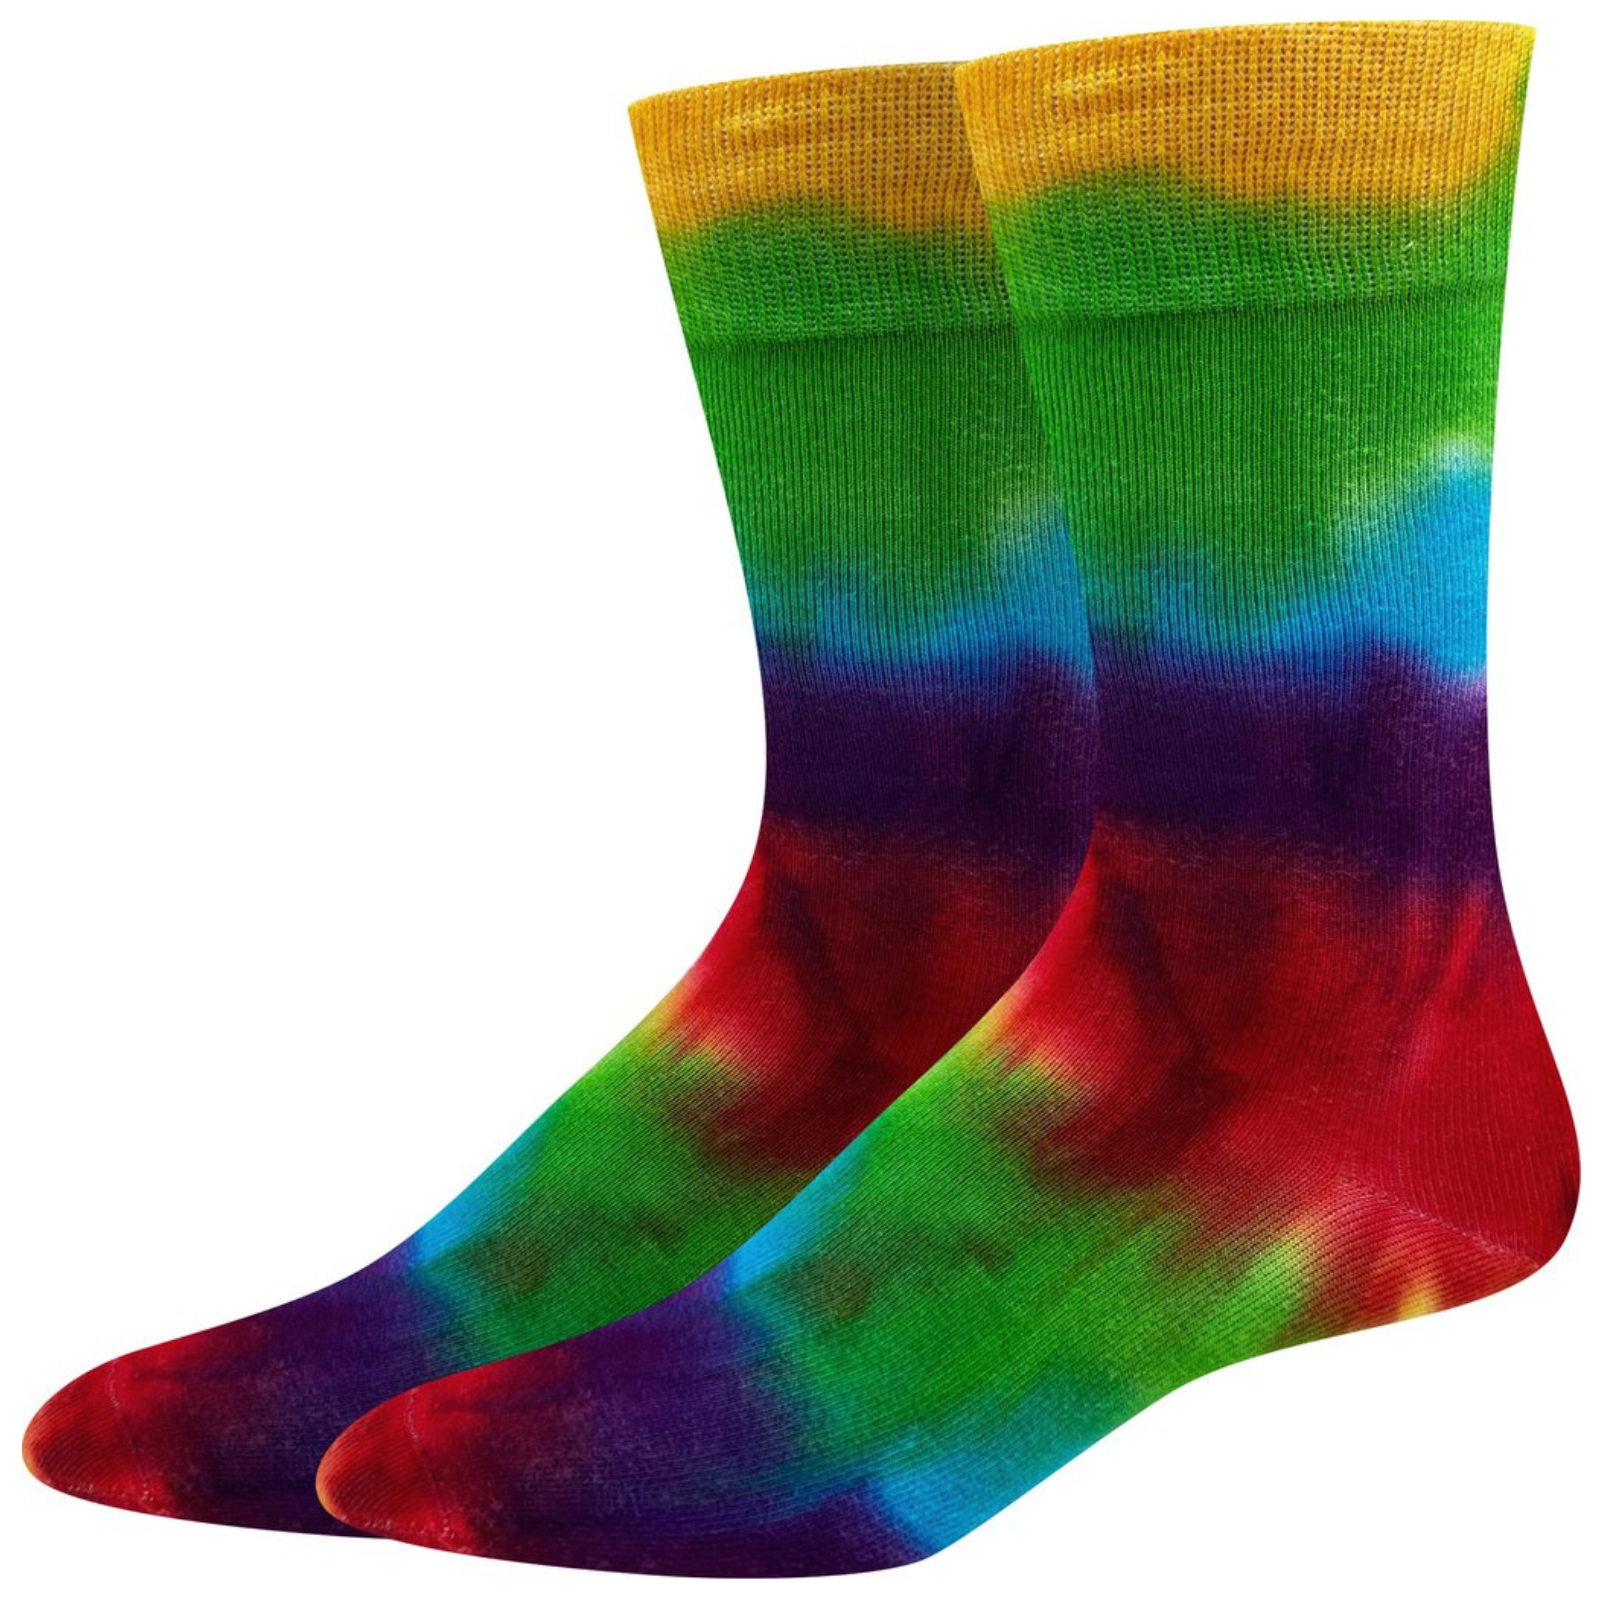 Sock Harbor Rainbow Tie Dye women's and men's crew sock show on display feet